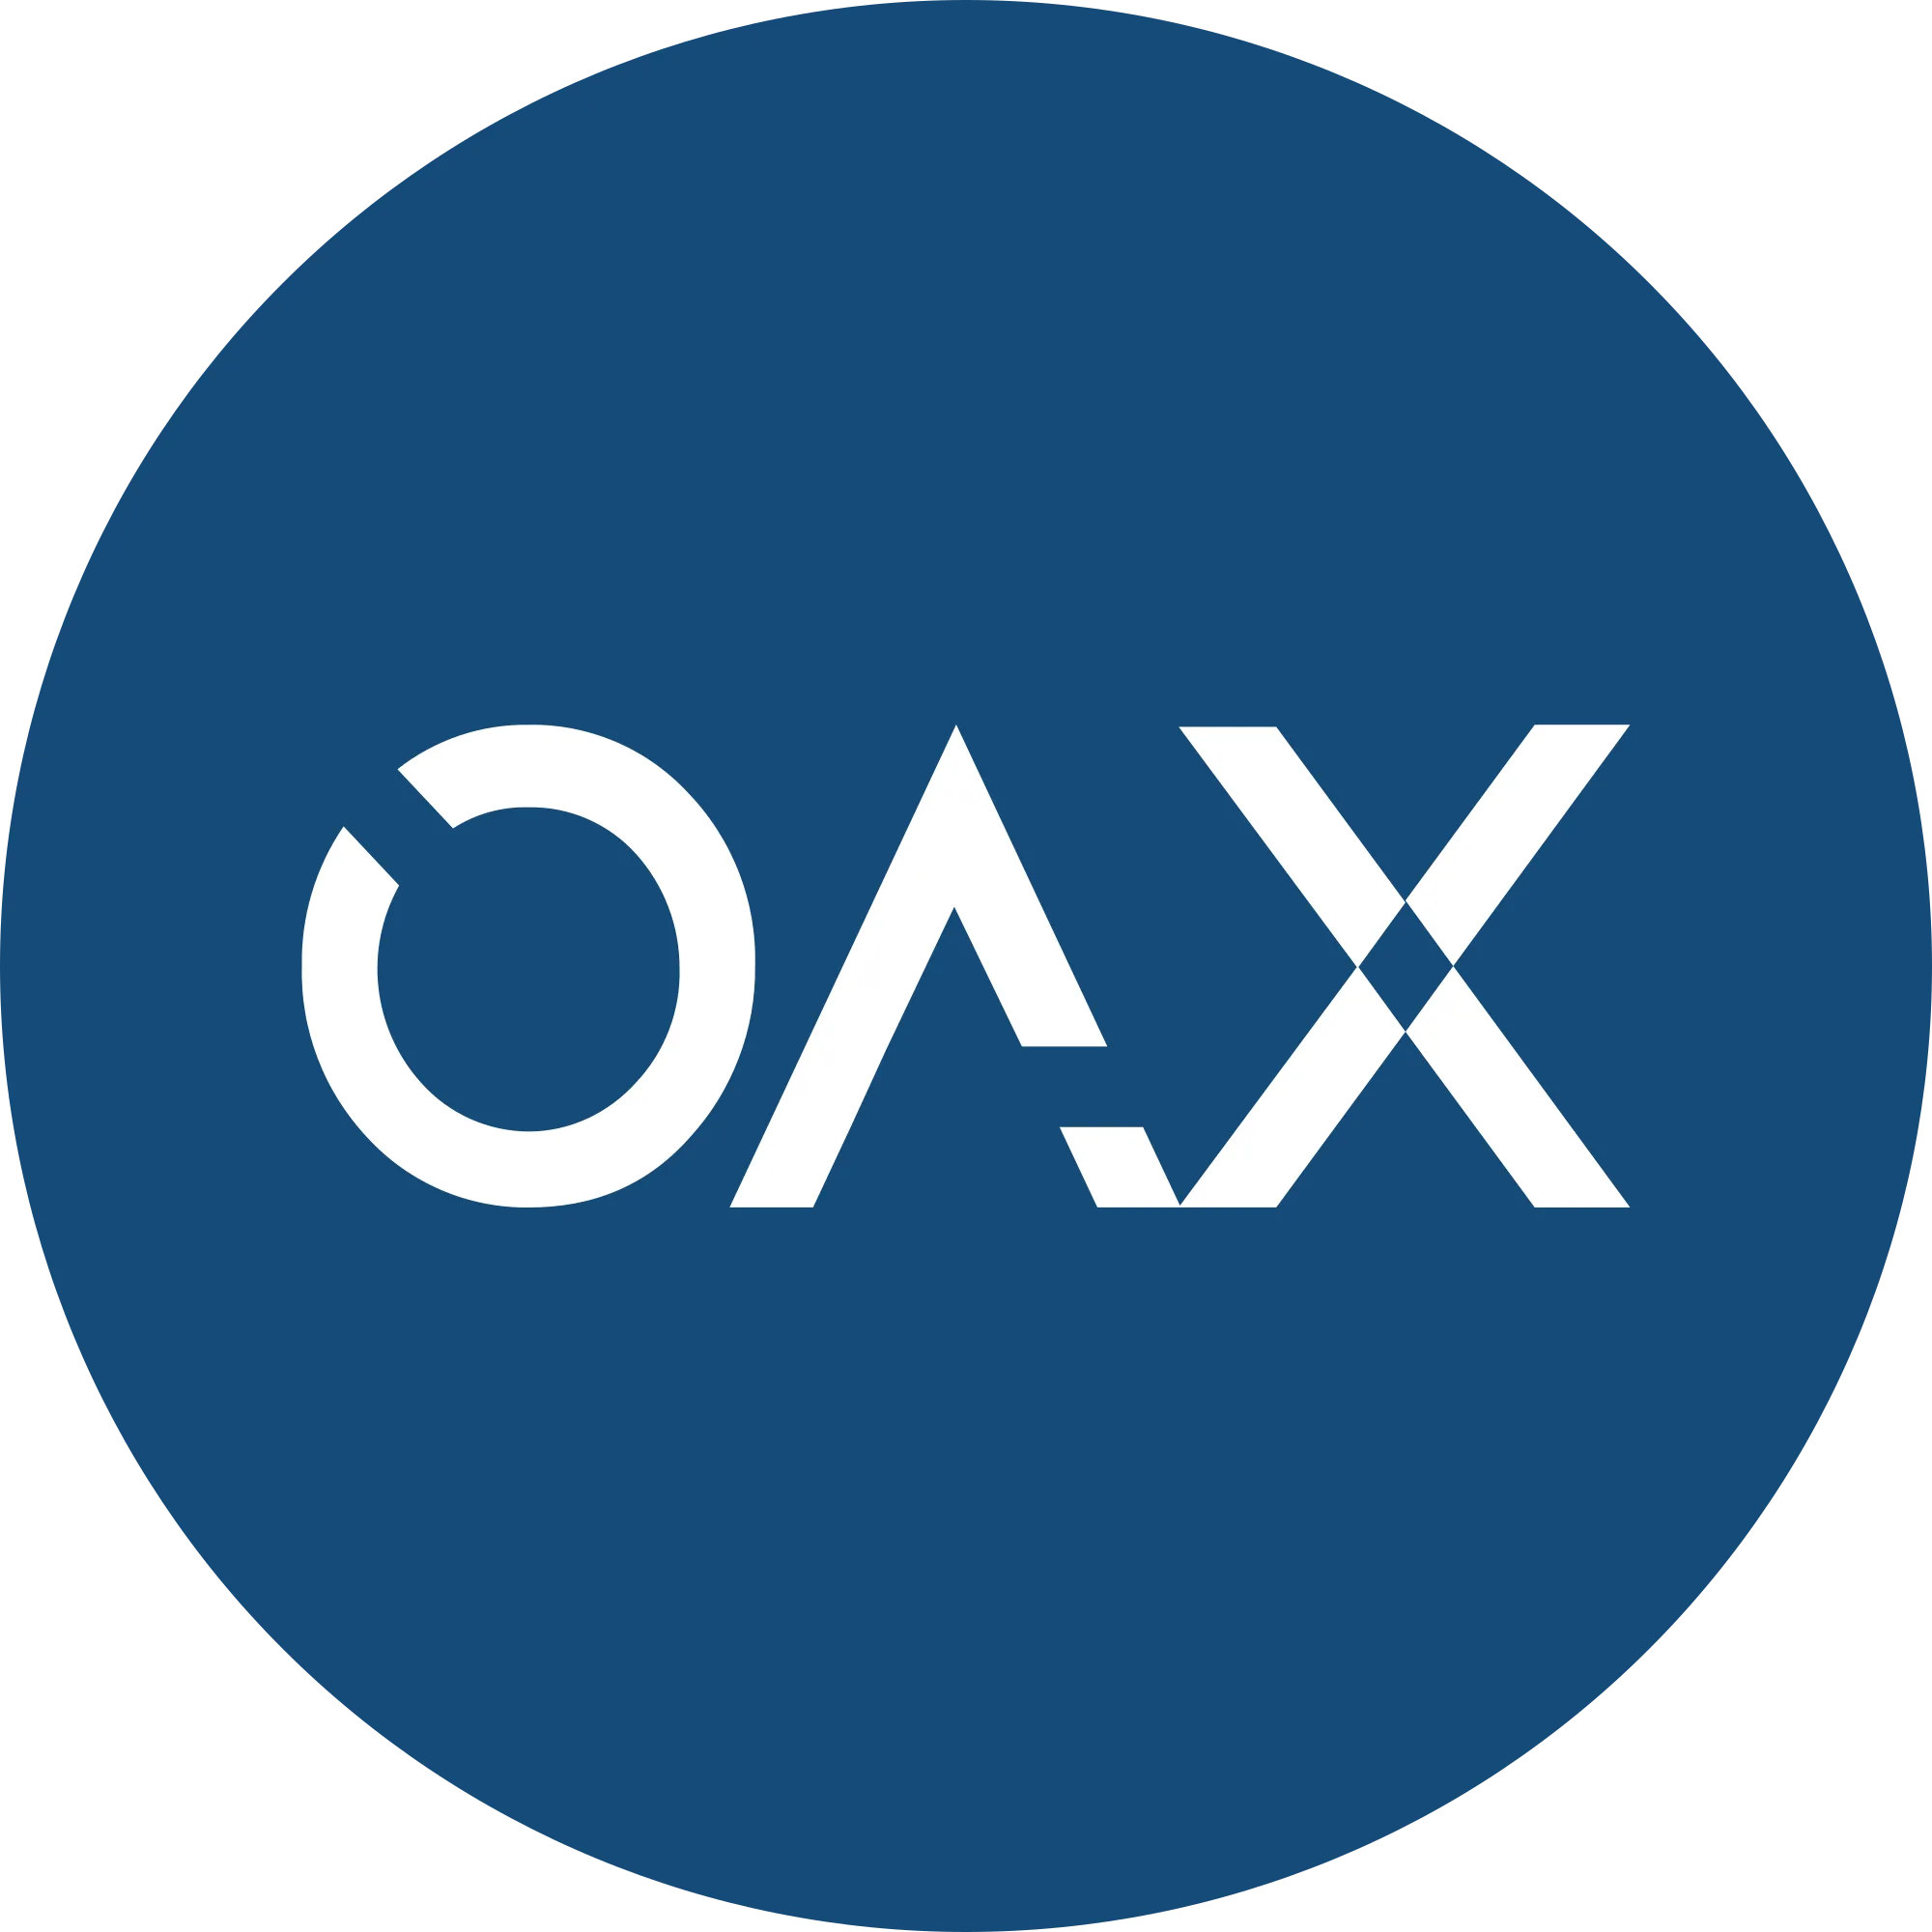 OAX logo in png format